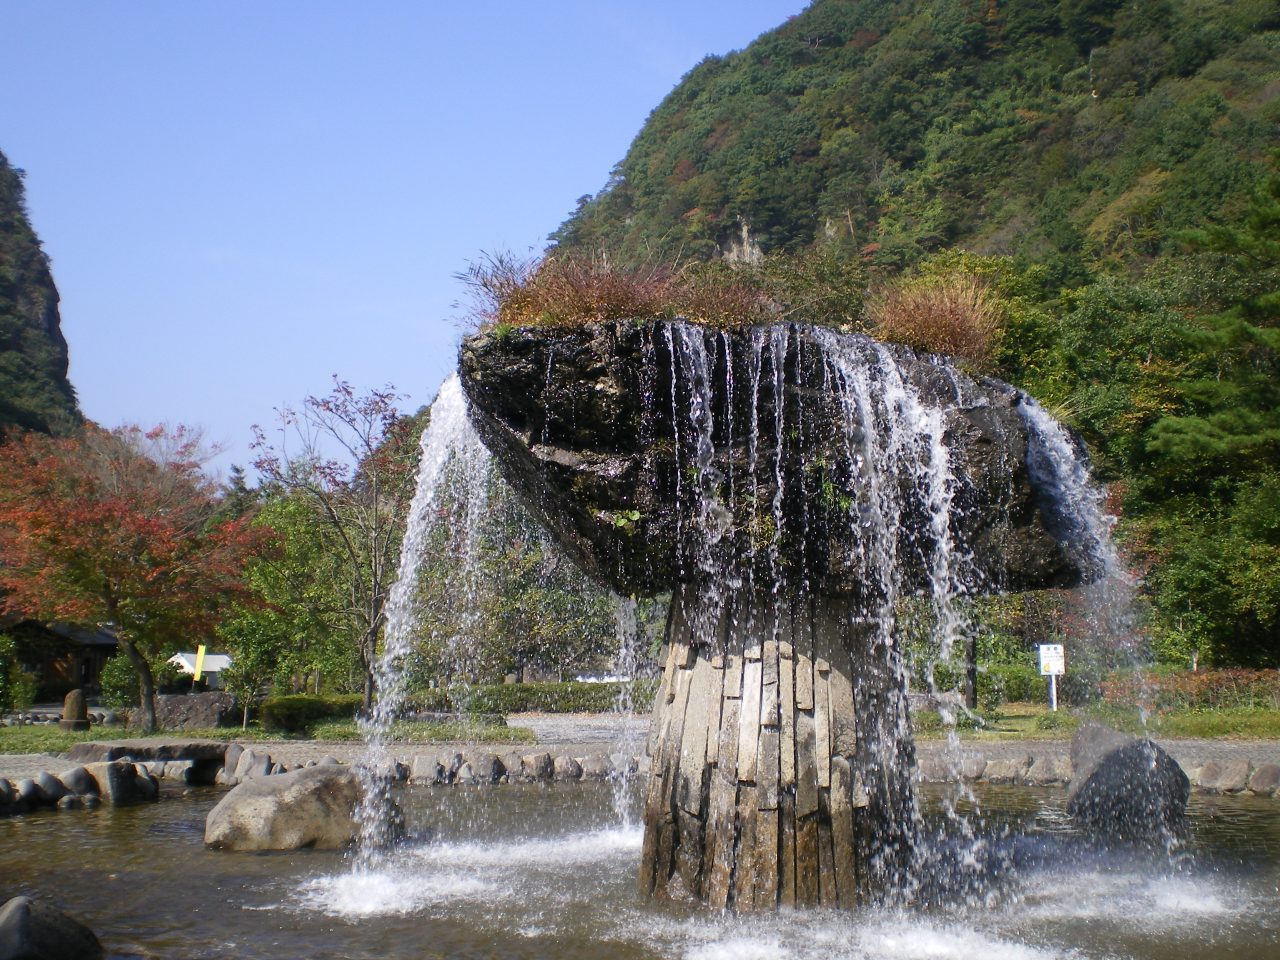 【사이모쿠이와공원(材木岩公園)】 나라의 천연기념물인 「자이모쿠이와(材木岩)」의 조형미를 간접적으로 느낄 수 있는「물과 돌의 대화의 공원(水と石との語らいの公園)」